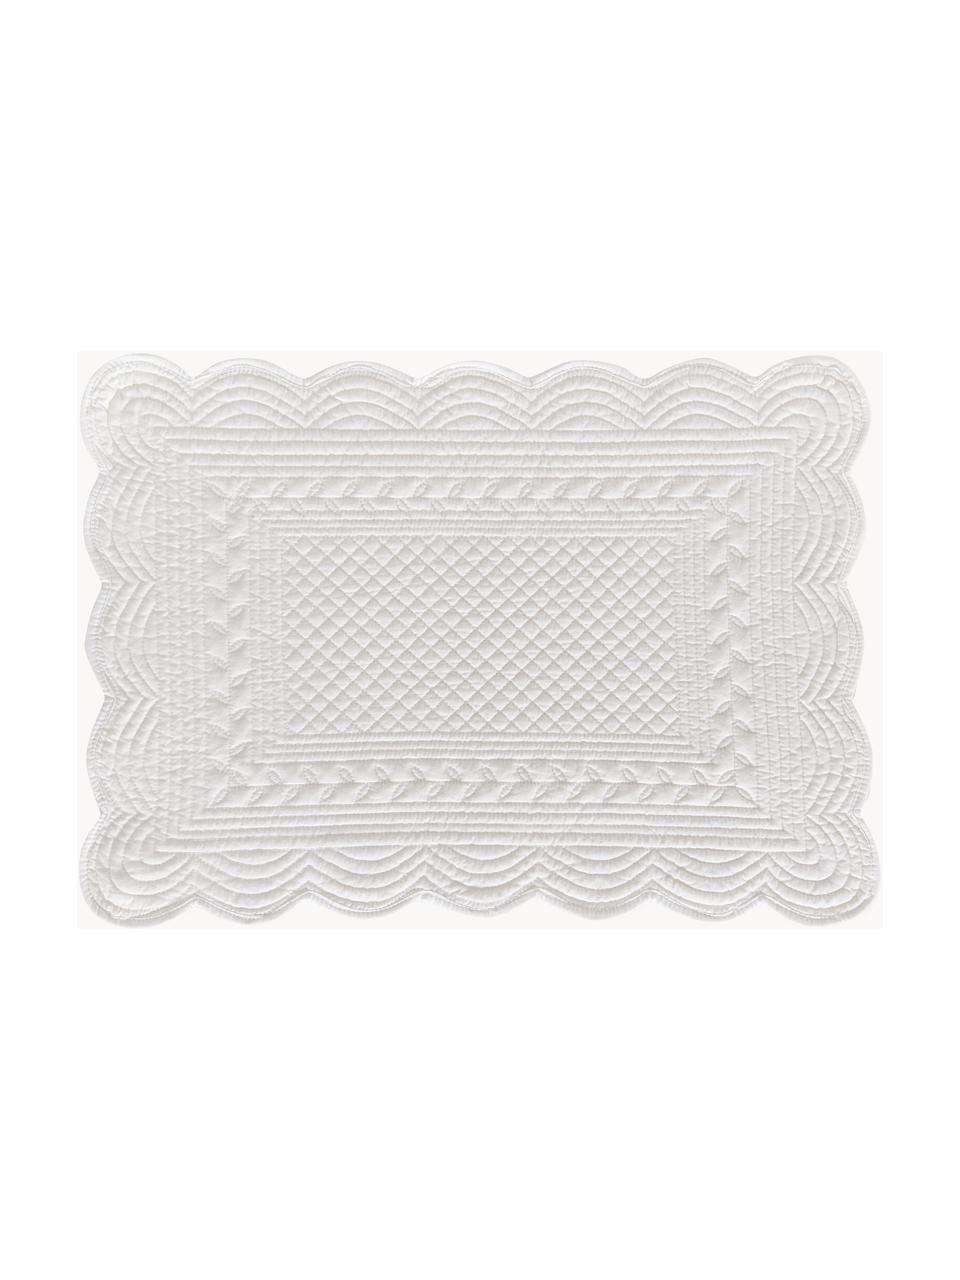 Tischsets Boutis, 2 Stück, 100% Baumwolle, Weiß, B 34 x L 48 cm